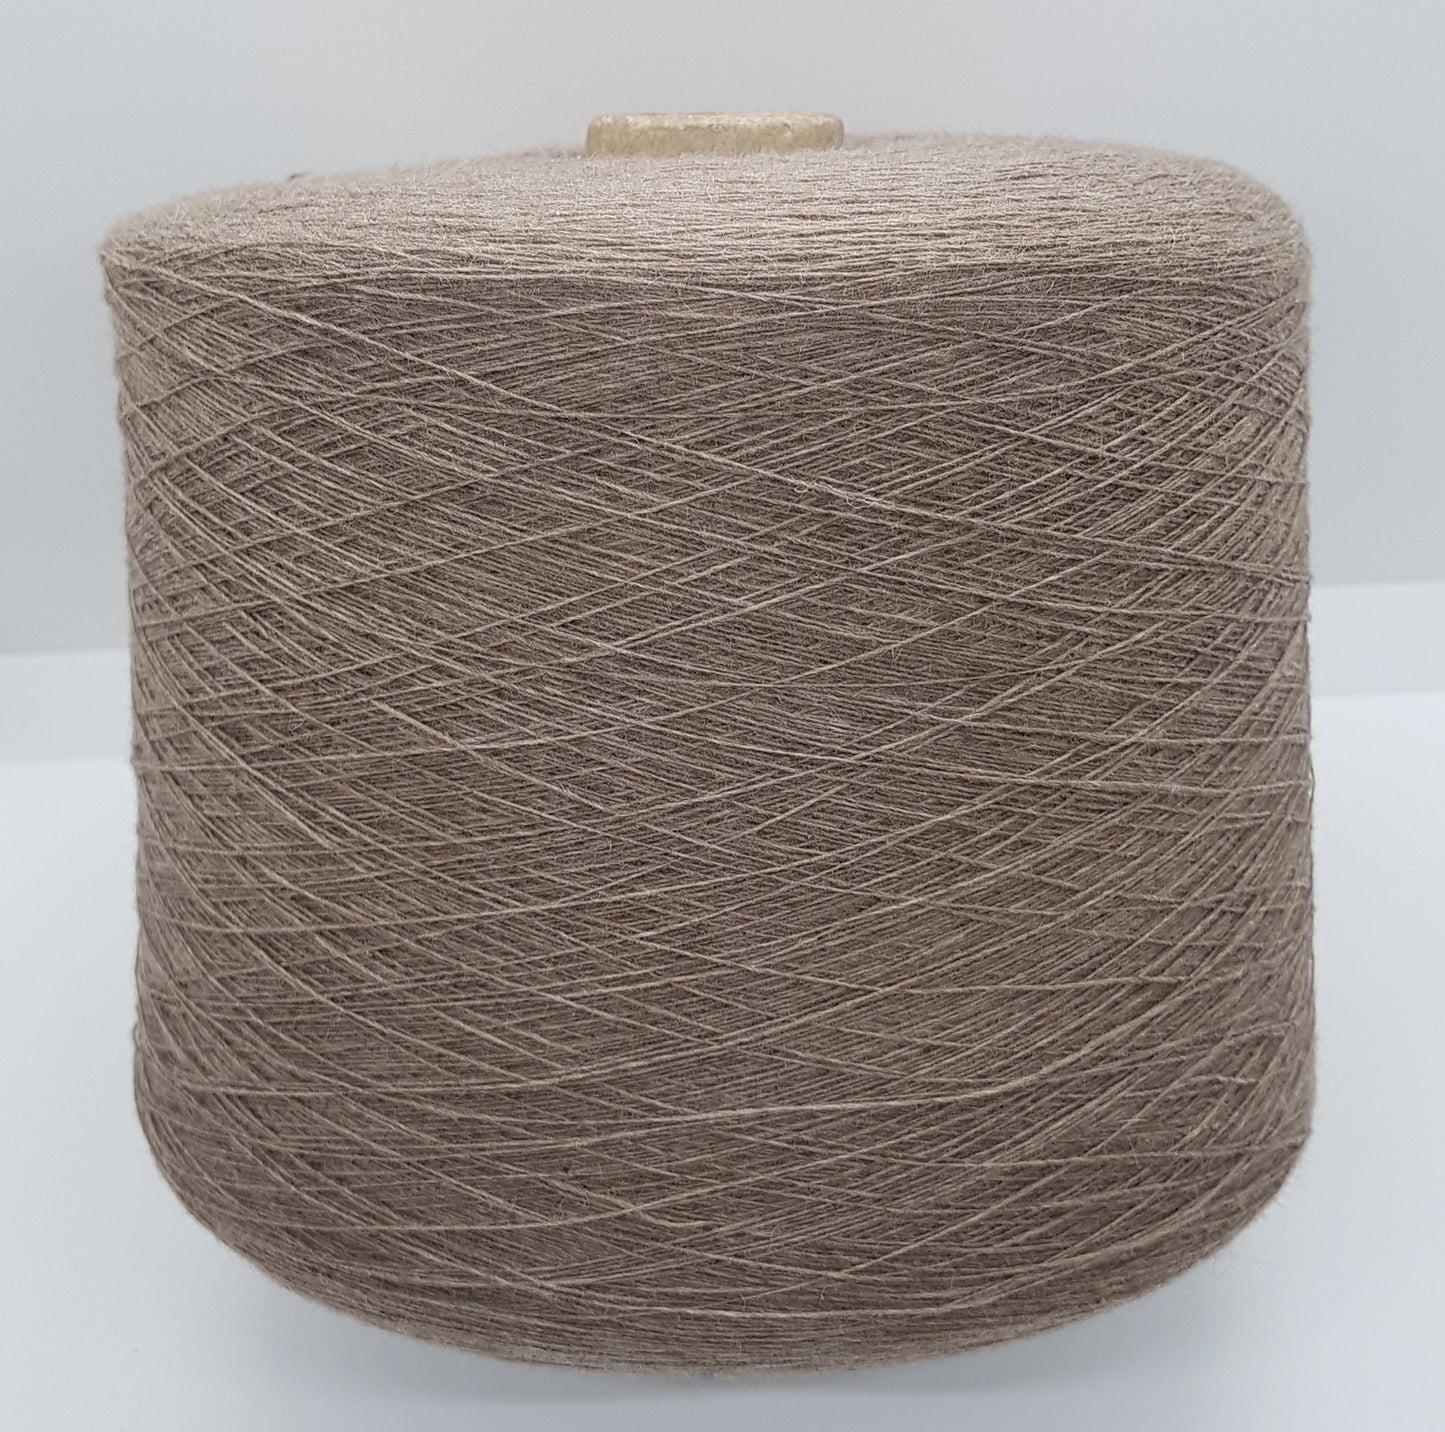 Kaschmir Angora Wolle italienisches Garn braune Farbe N.421